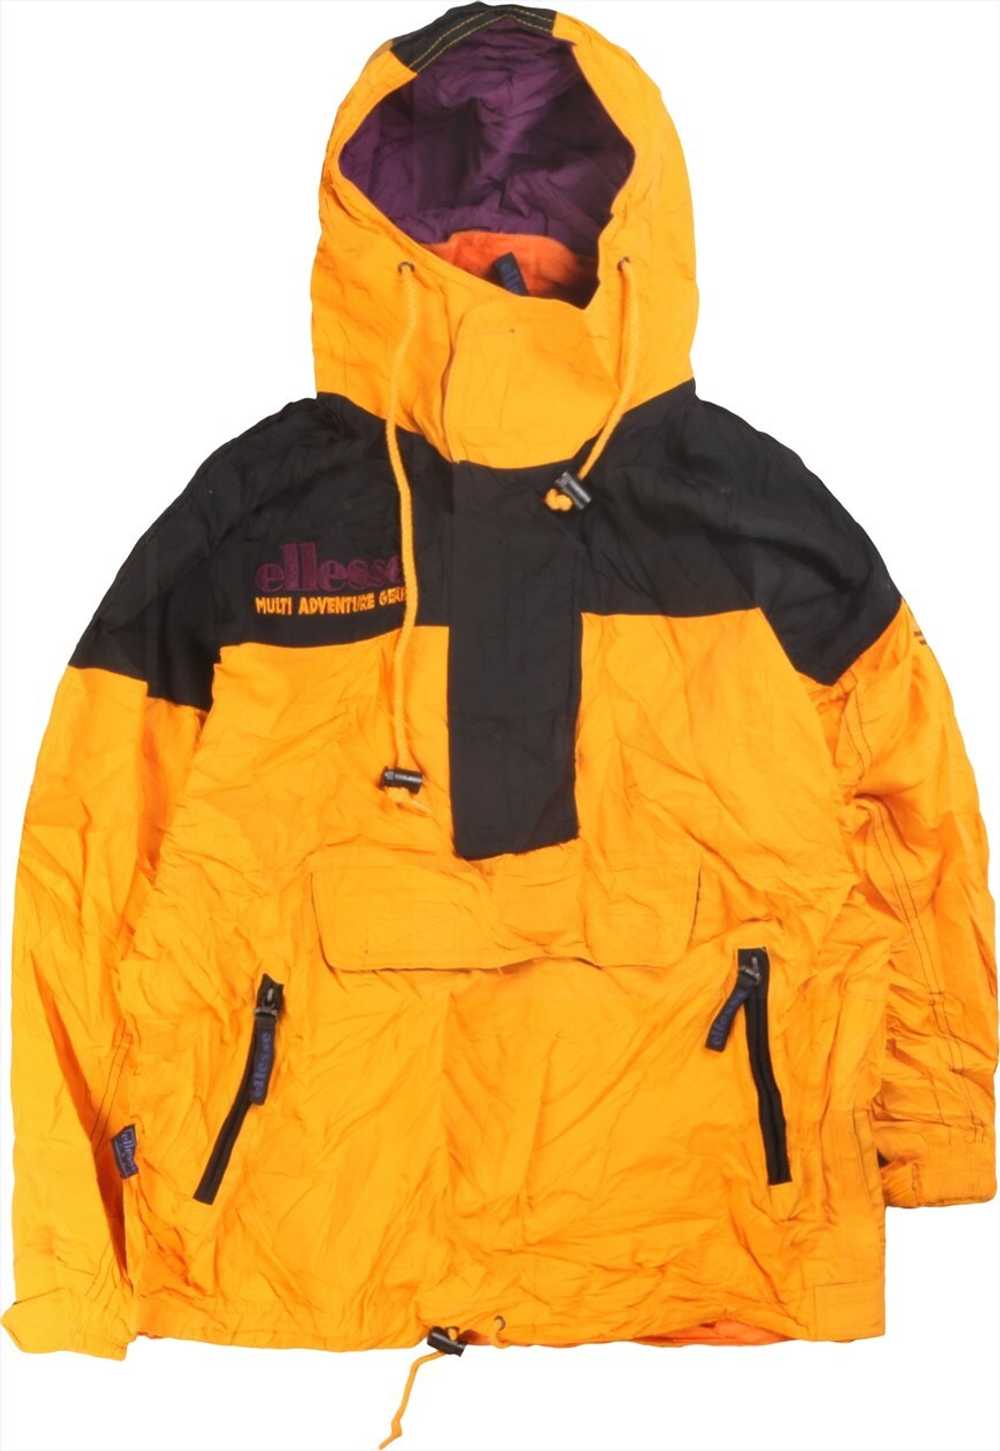 Vintage 90's Ellesse Puffer Jacket Retro Ski Hood… - image 1